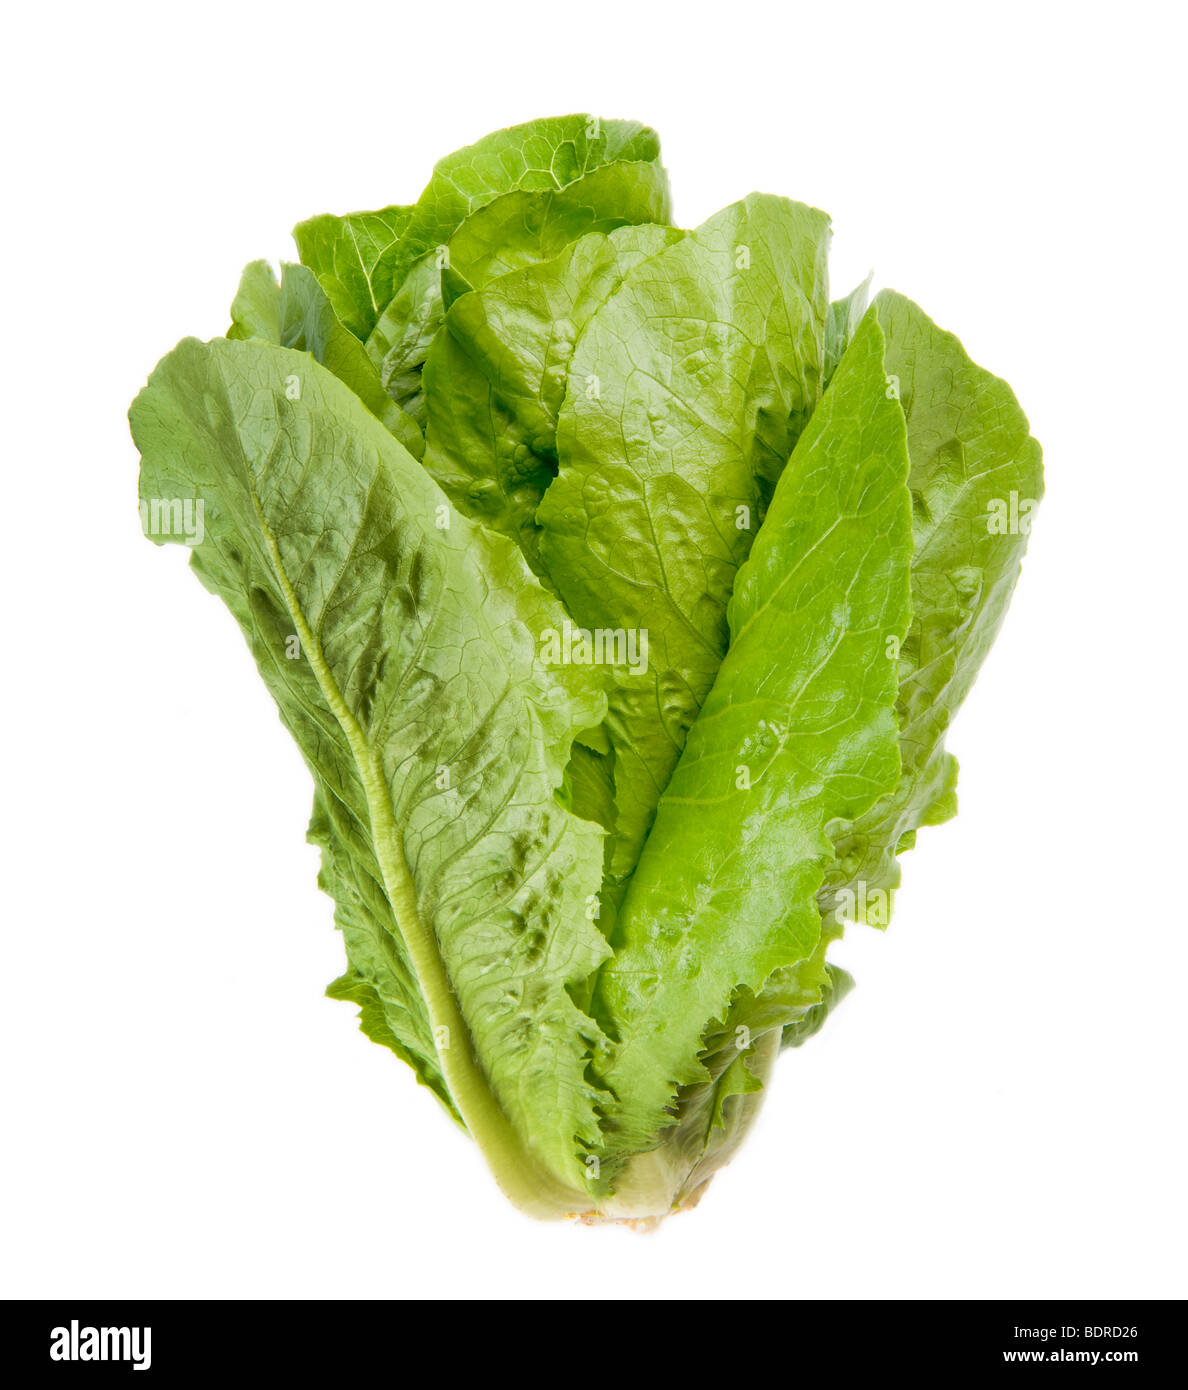 Salat insalata verde romana greenfood cibo mediterraneo lascia leaf italia italien italiana fitness fit FOOD sulla lattuga backgr bianco Foto Stock